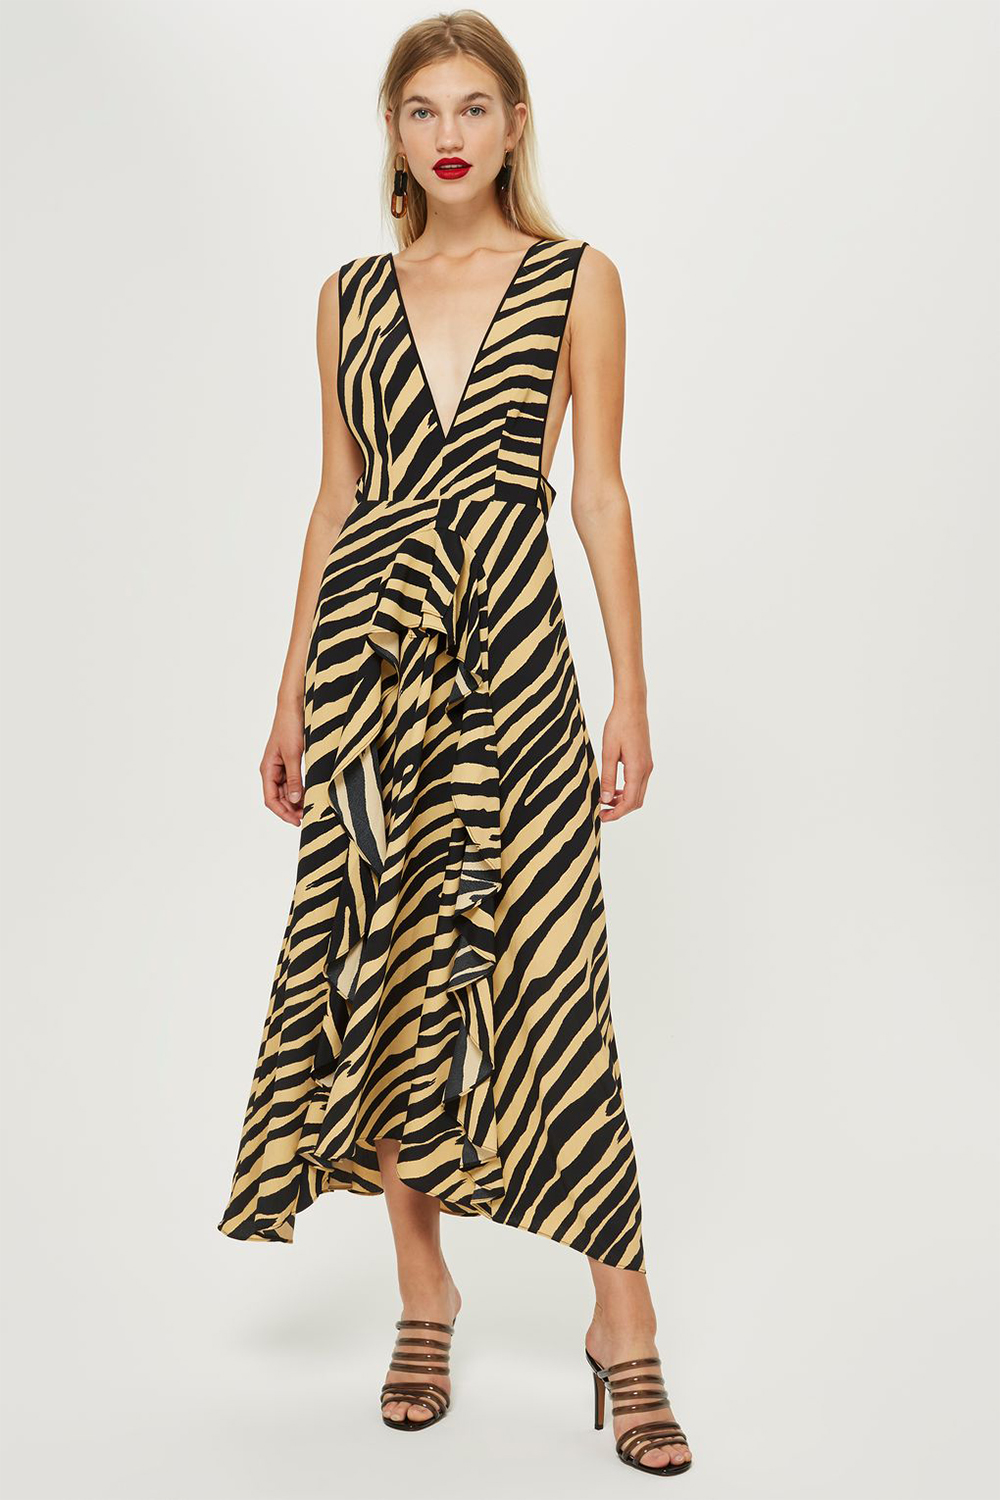 topshop leopard print maxi dress